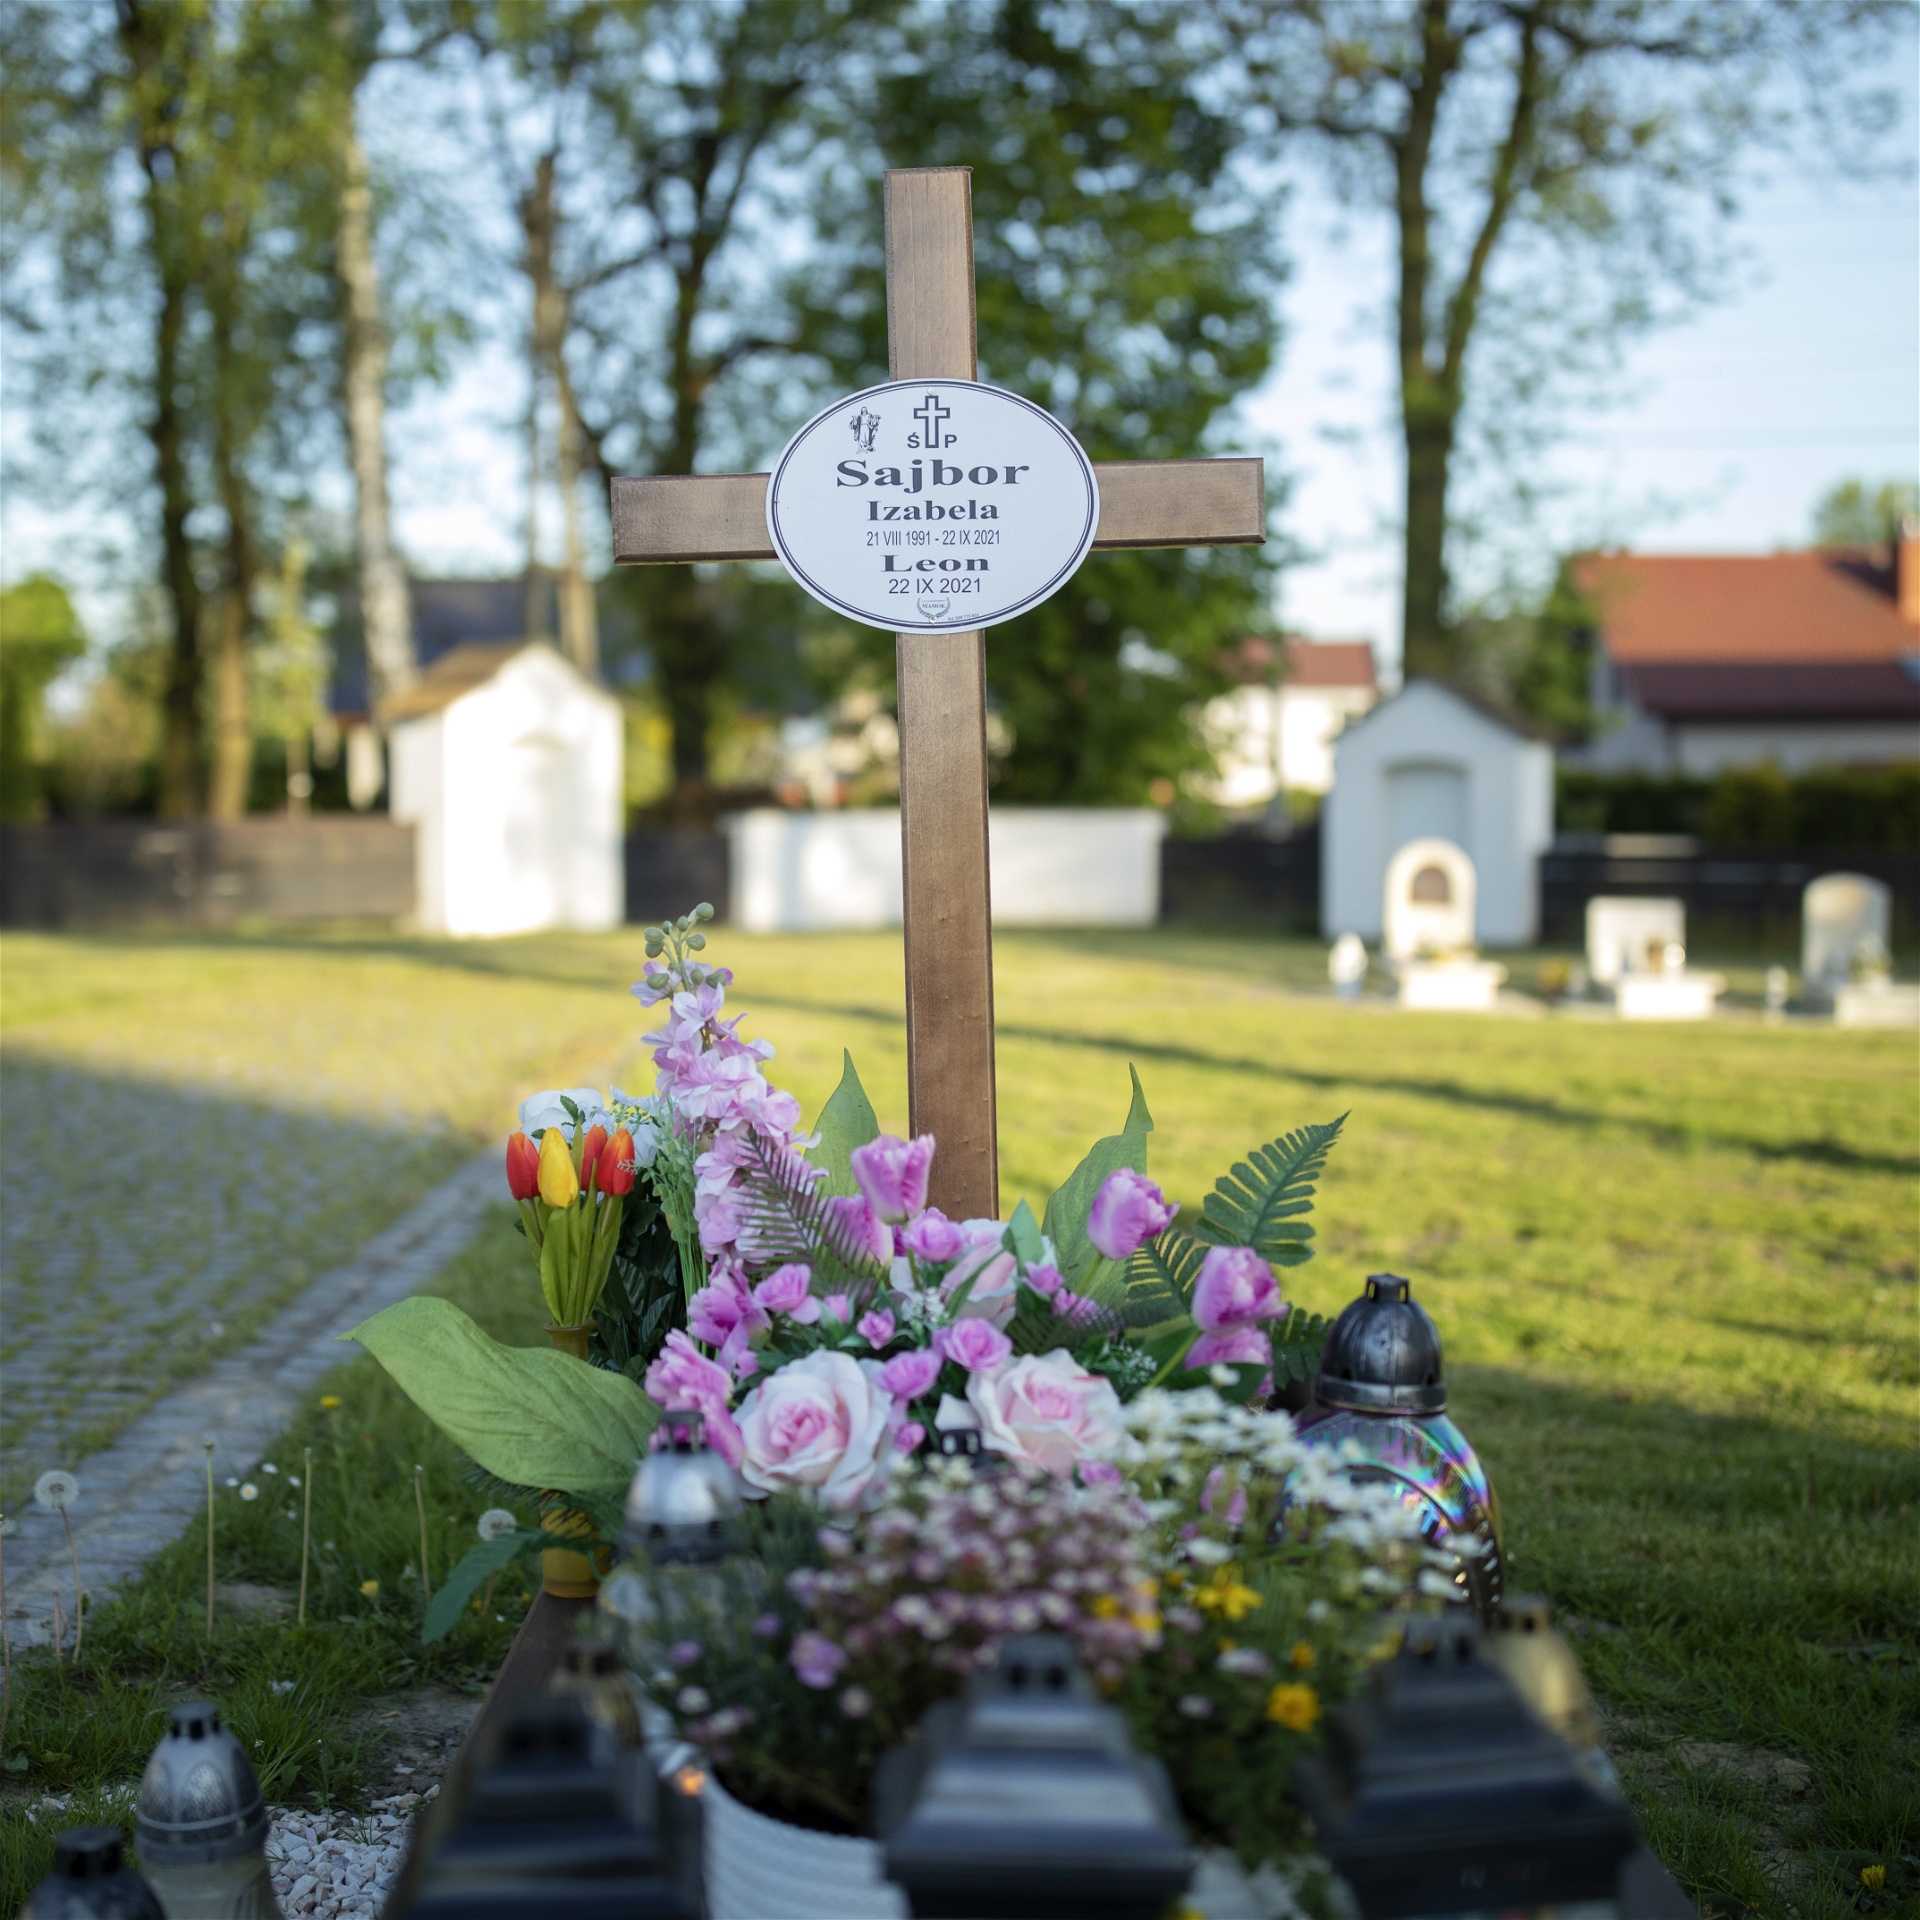 Izabela Sajbors grav i Pszczyna, en pittoresk småstad i södra Polen. Sonen Leon dog redan i vecka 22. Foto: Åsa Sjöström